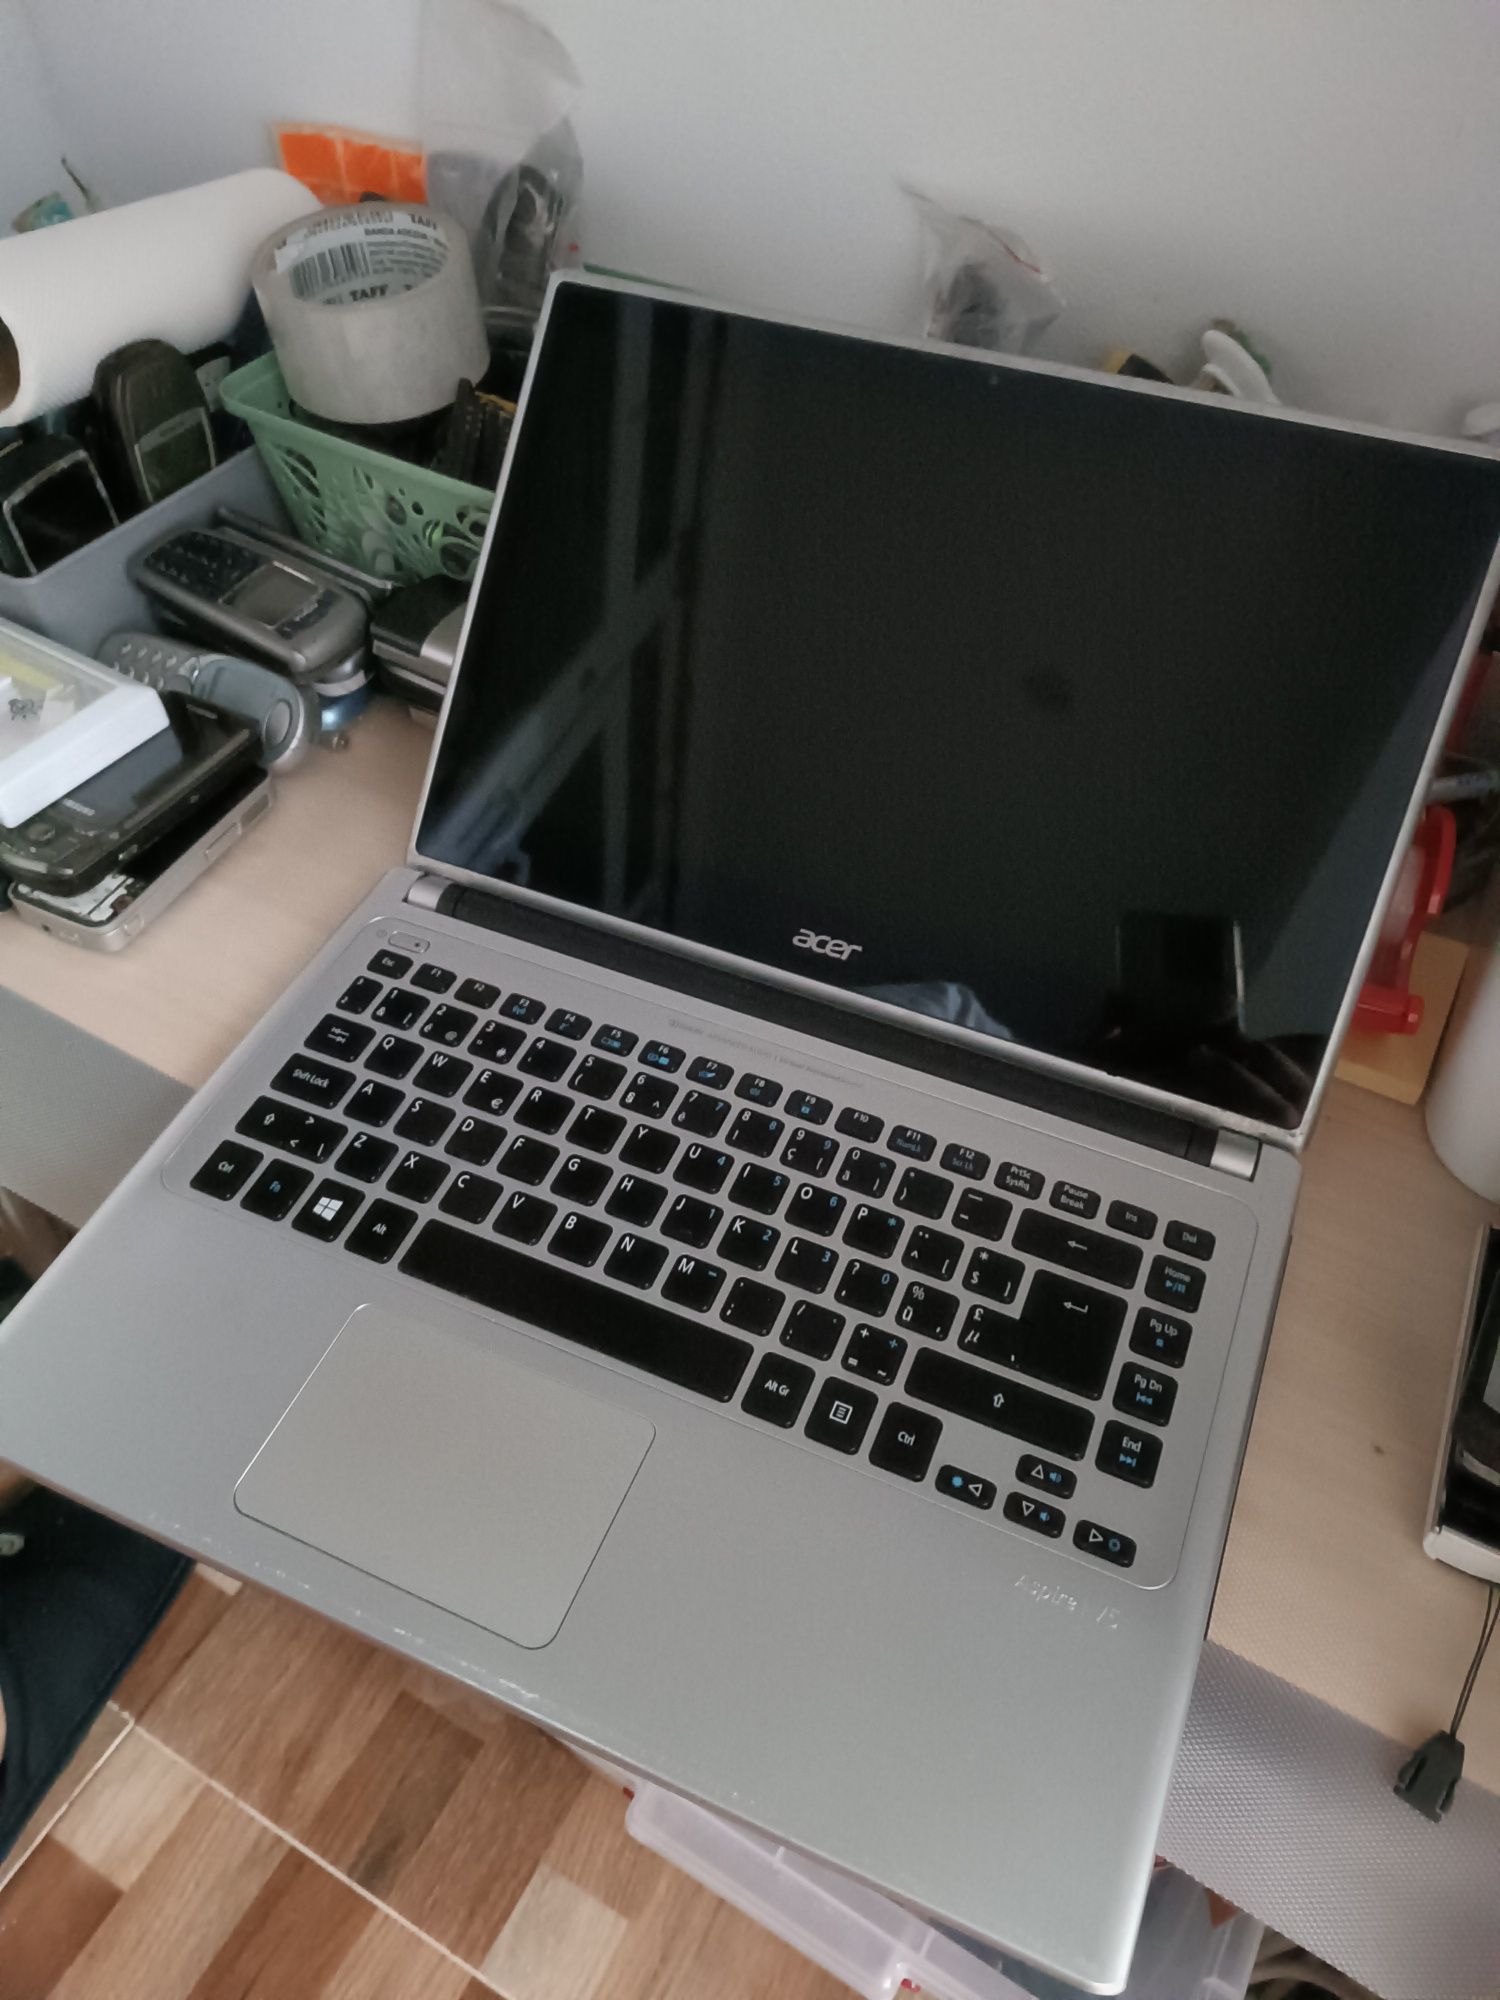 Laptop Acer Aspire V5